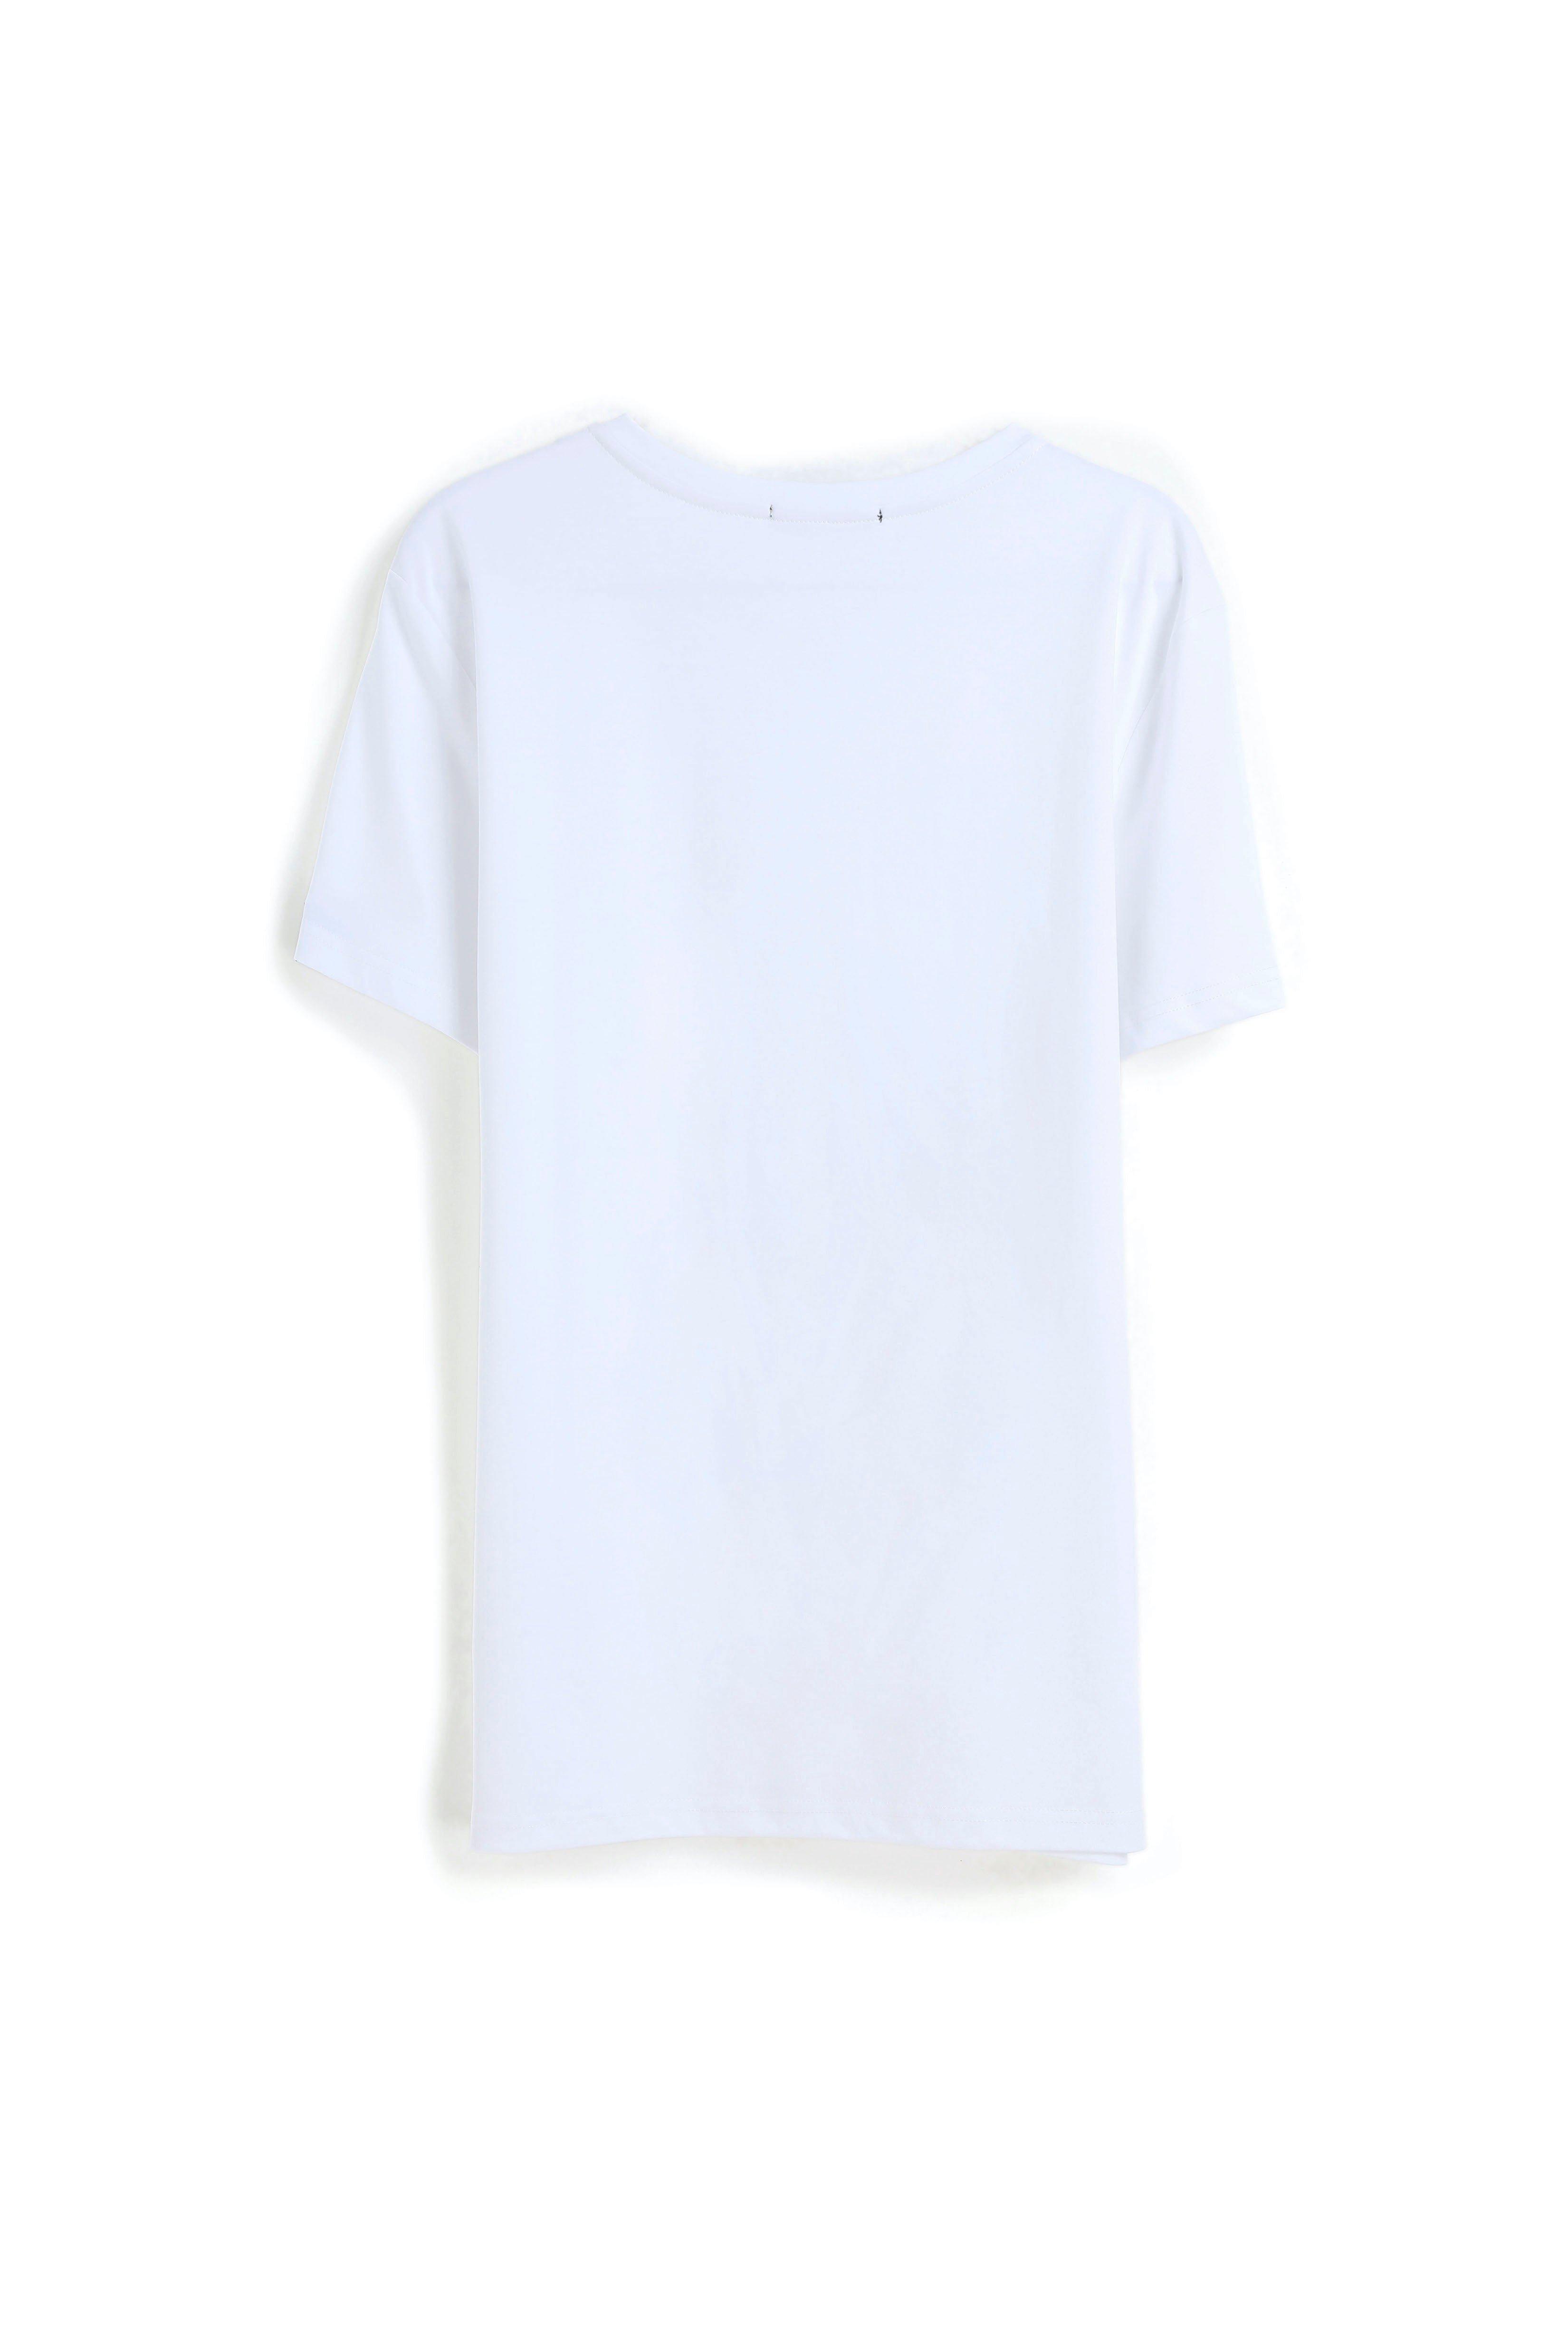 Bellemere New York  T-shirt in cotone mercerizzato con grande scollo a V 